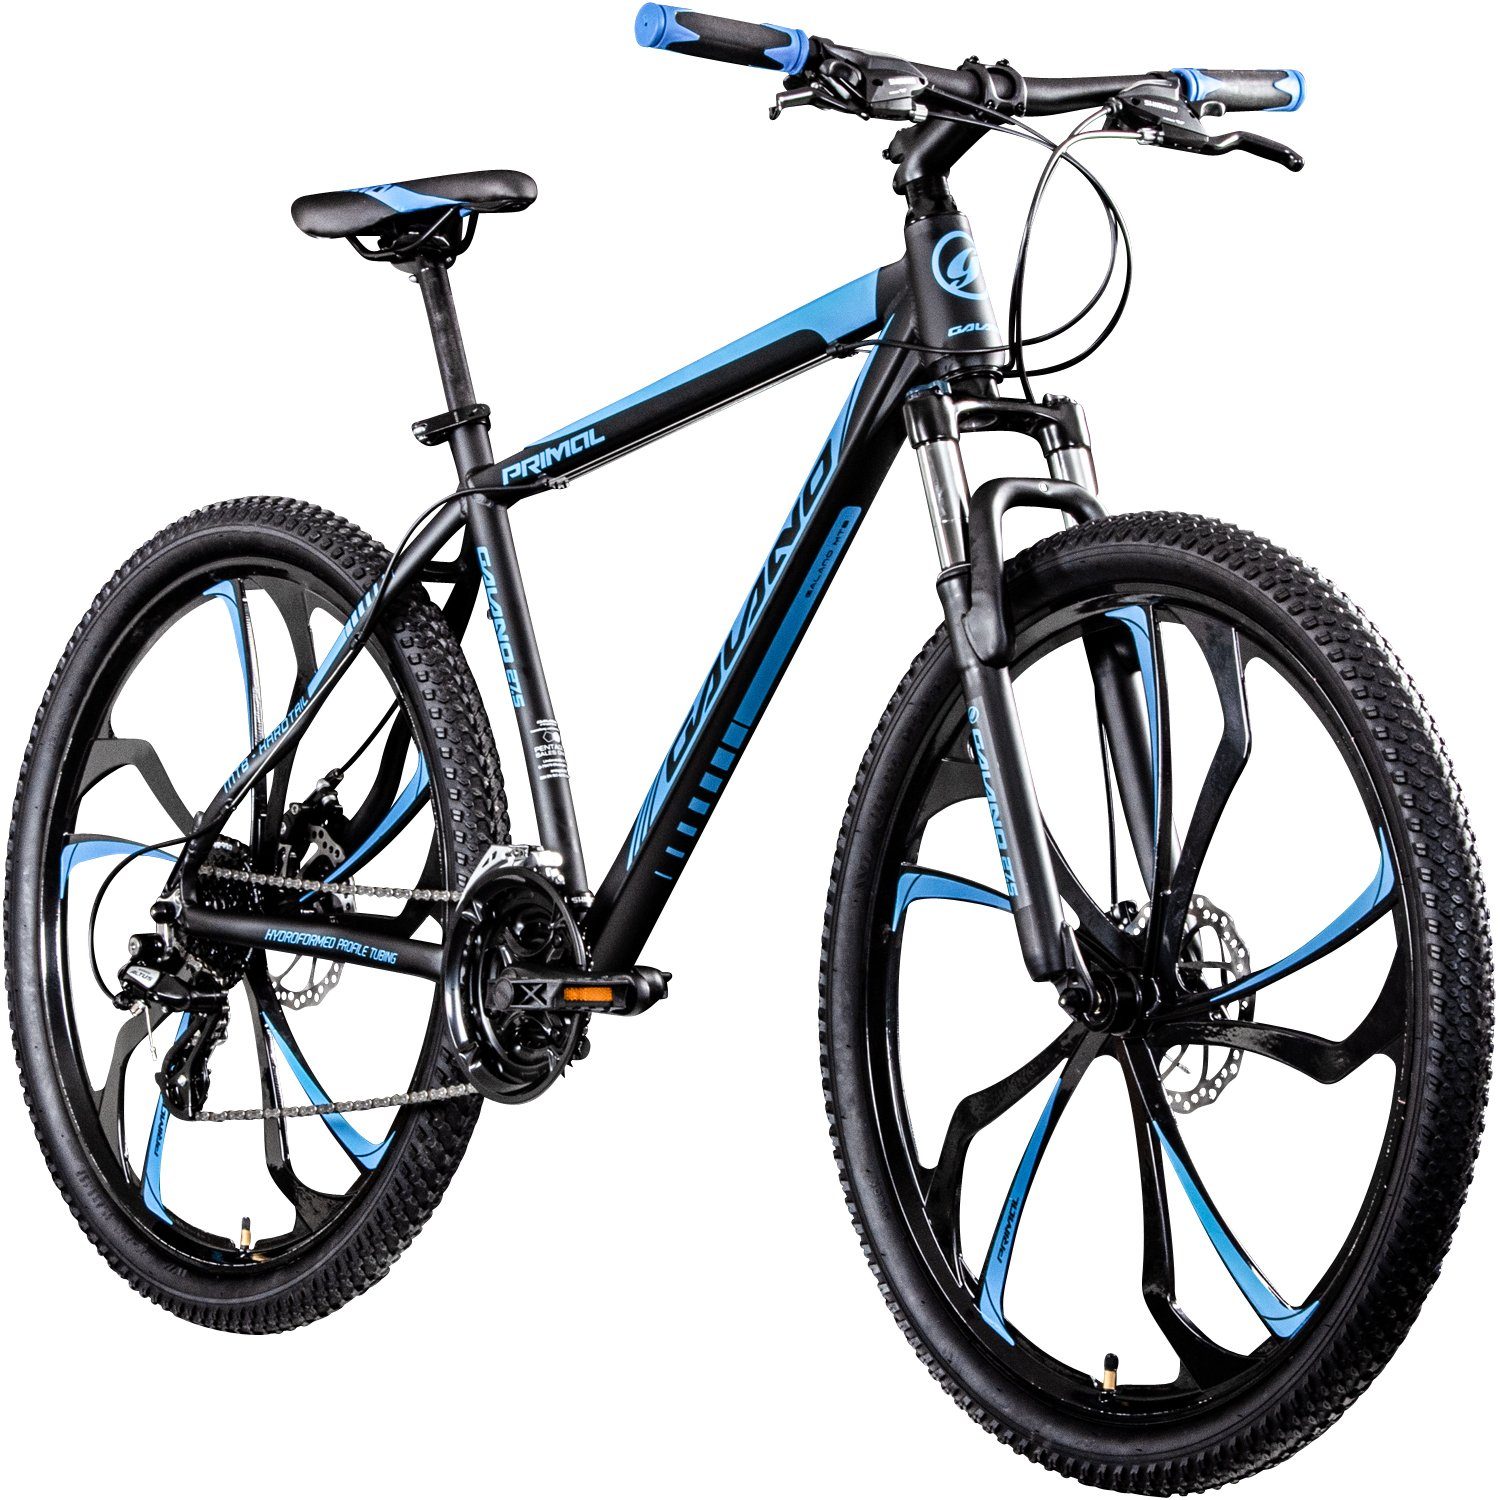 Galano Mountainbike Primal, 24 Gang, Kettenschaltung, Mountainbike Jugendliche und Erwachsene 165-185cm MTB Hardtail Fahrrad schwarz/blau